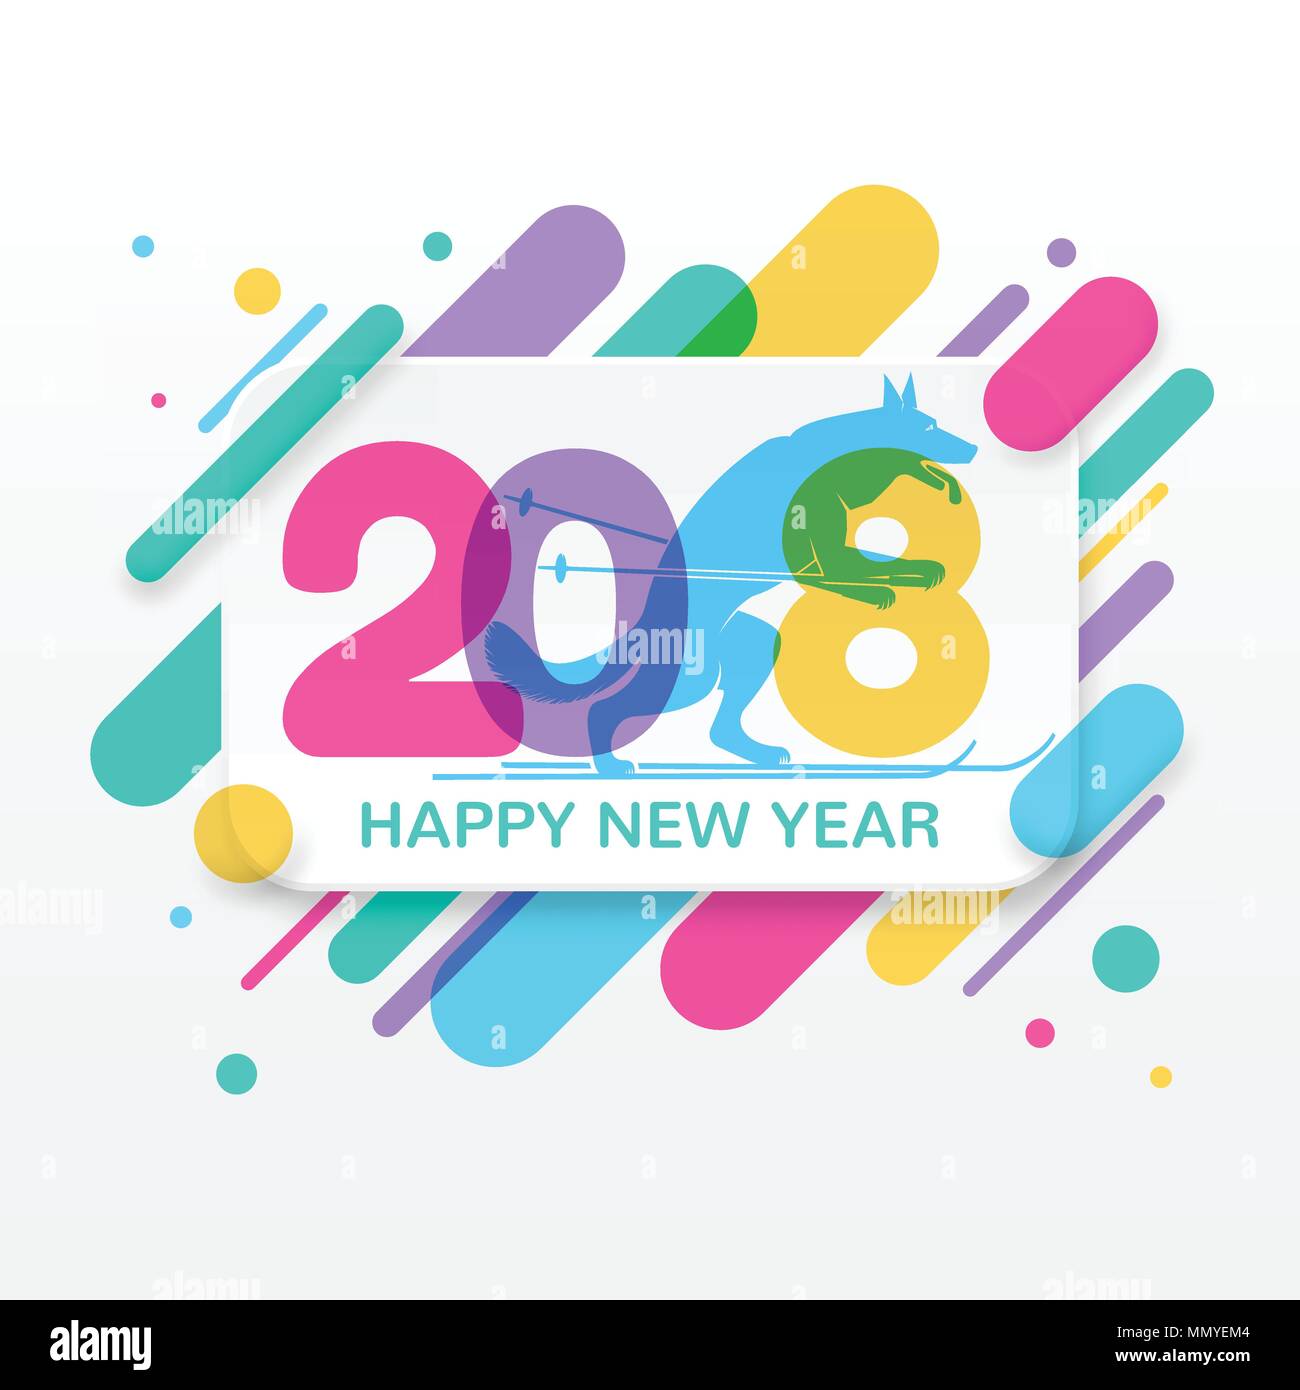 2018 Frohes Neues Jahr Grußkarte mit abstrakten farbigen abgerundeten Formen Linien in der Diagonale Rhythmus. Für Grußkarte, Plakat, Broschüre oder Flyer Vorlage Stock Vektor